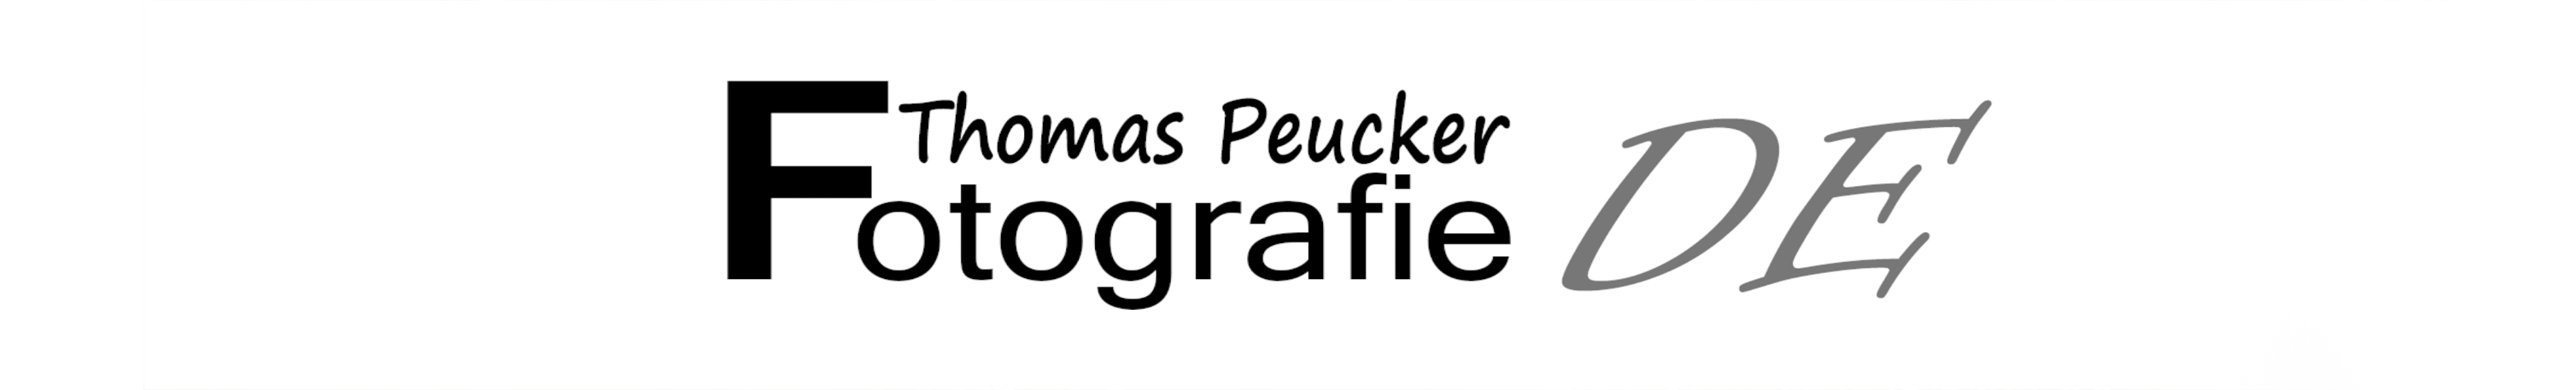 Thomas-Peucker-Fotografie.de